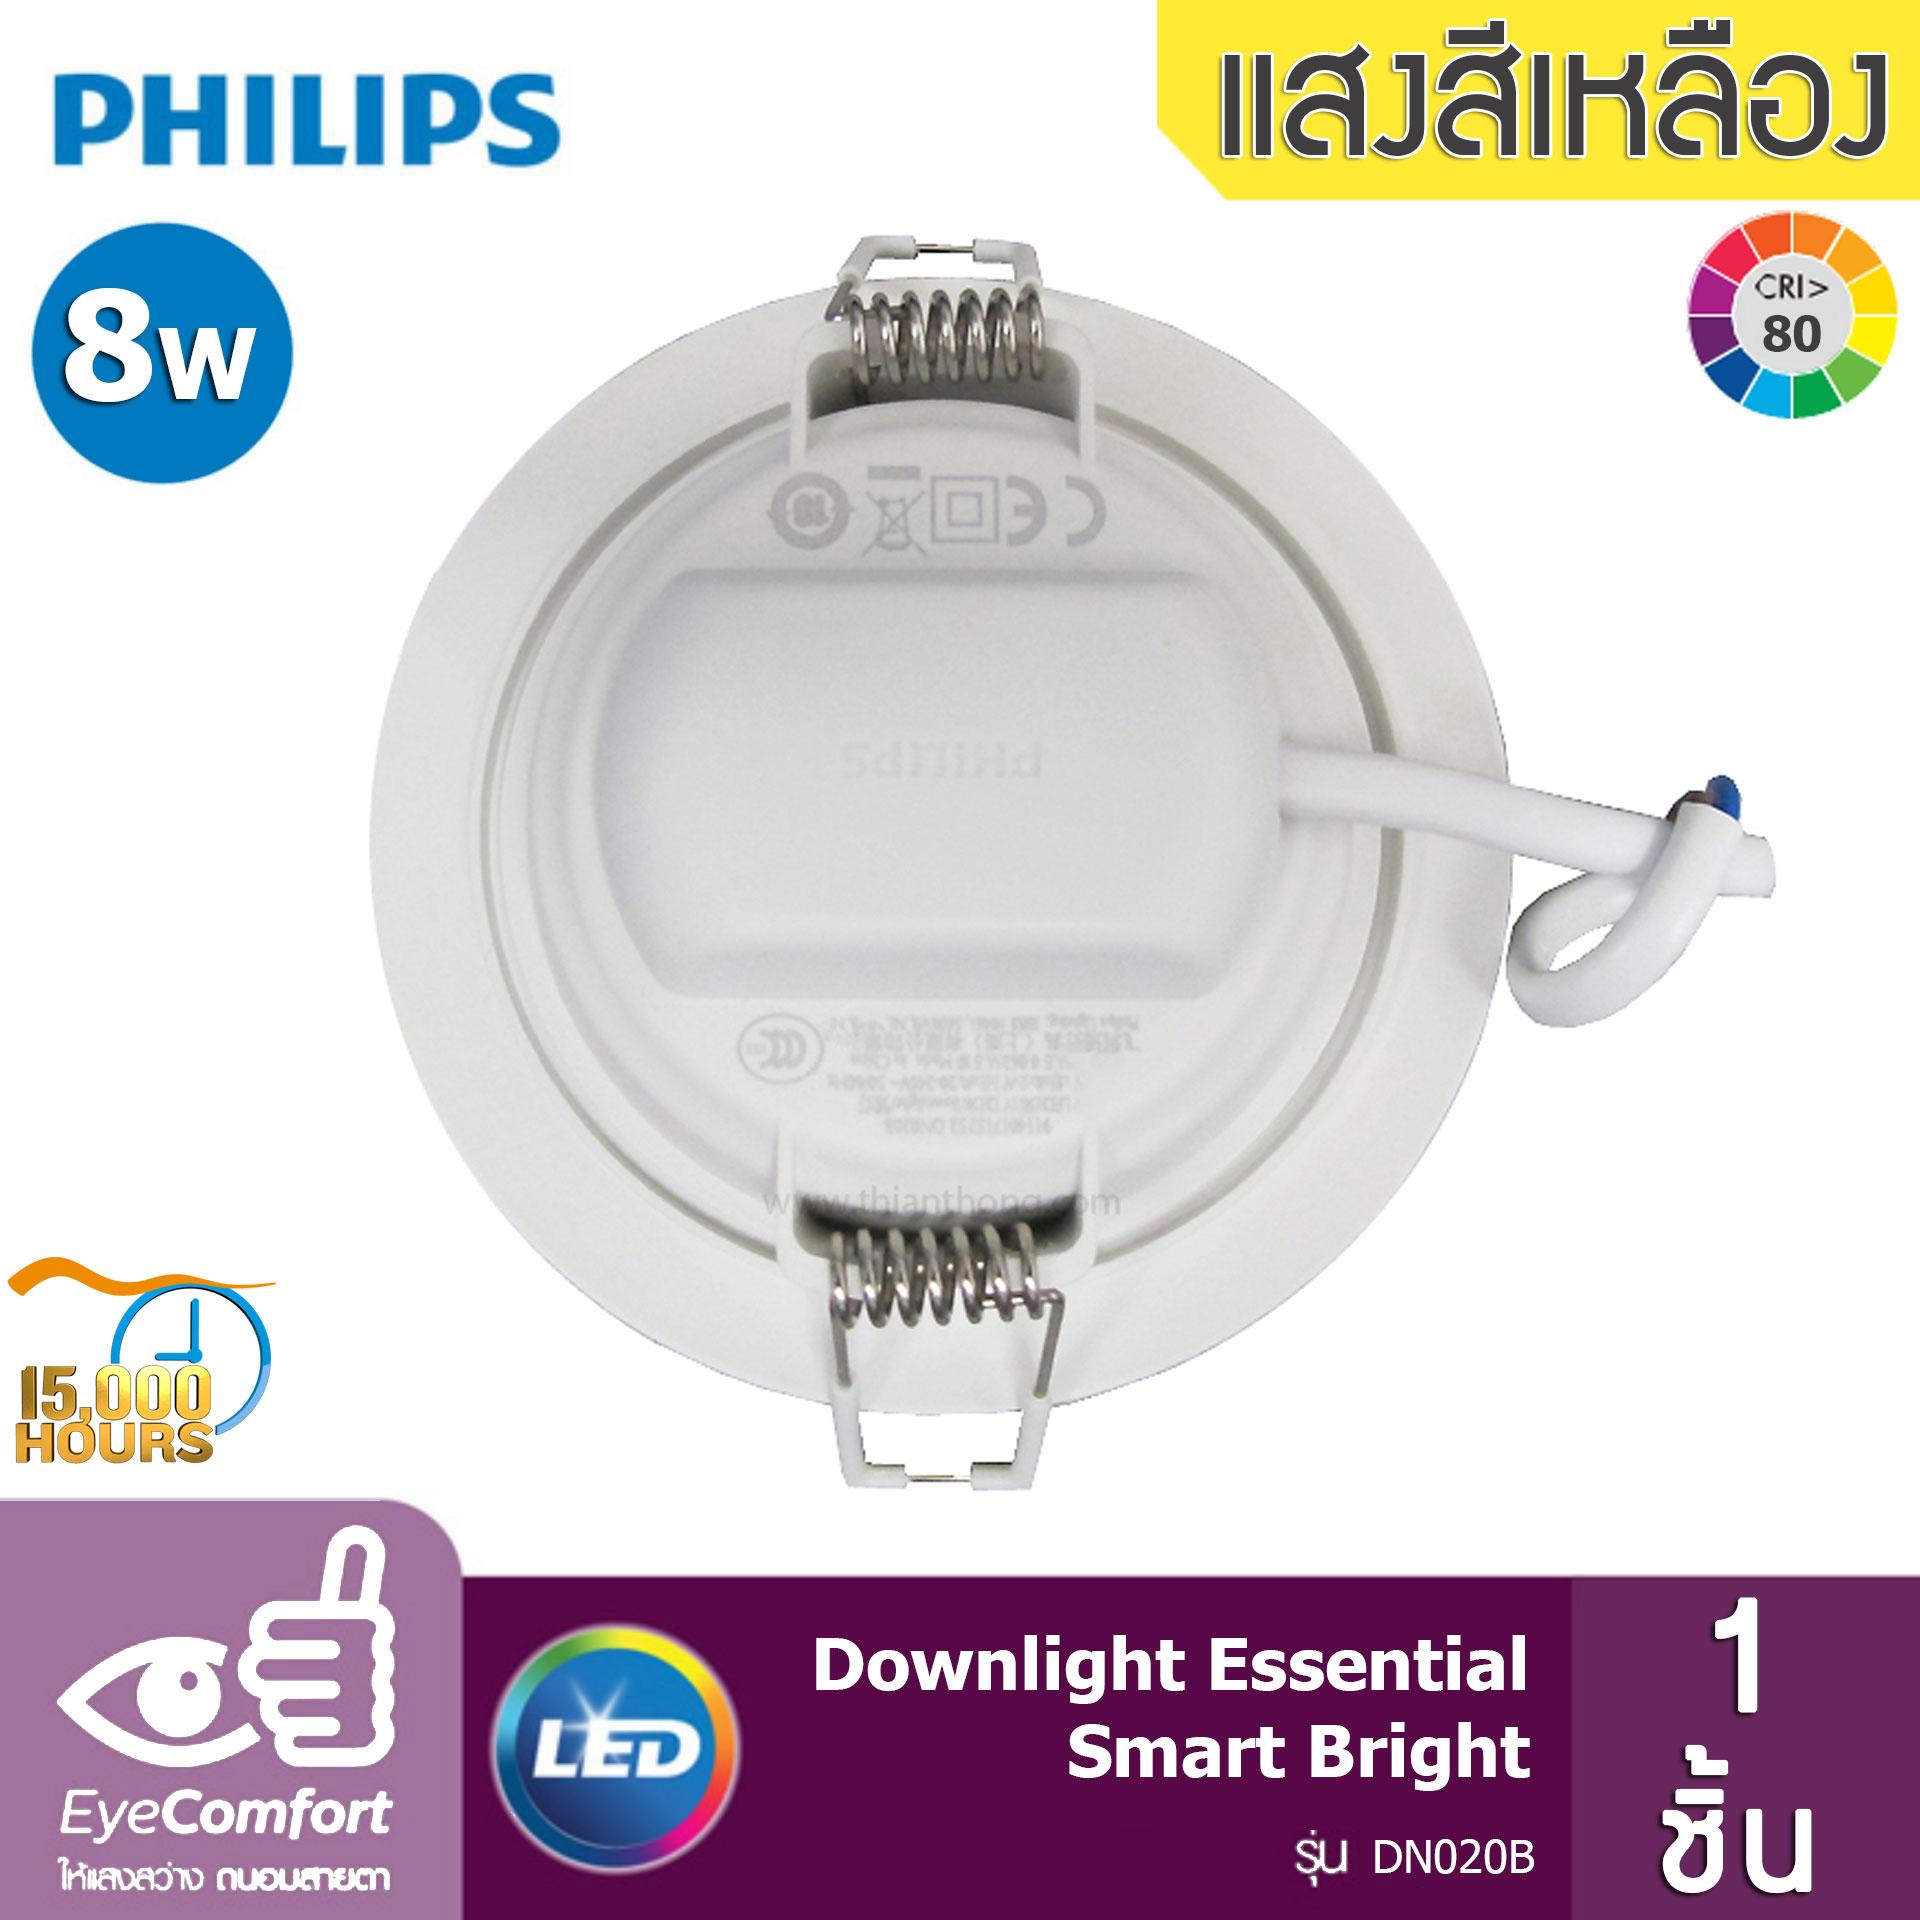 Philips โคมไฟดาวน์ไลท์ Essential Smart Bright LED ขนาด 8W 600 Lumen รุ่น DN020 (จำนวน 1 ชิ้น)